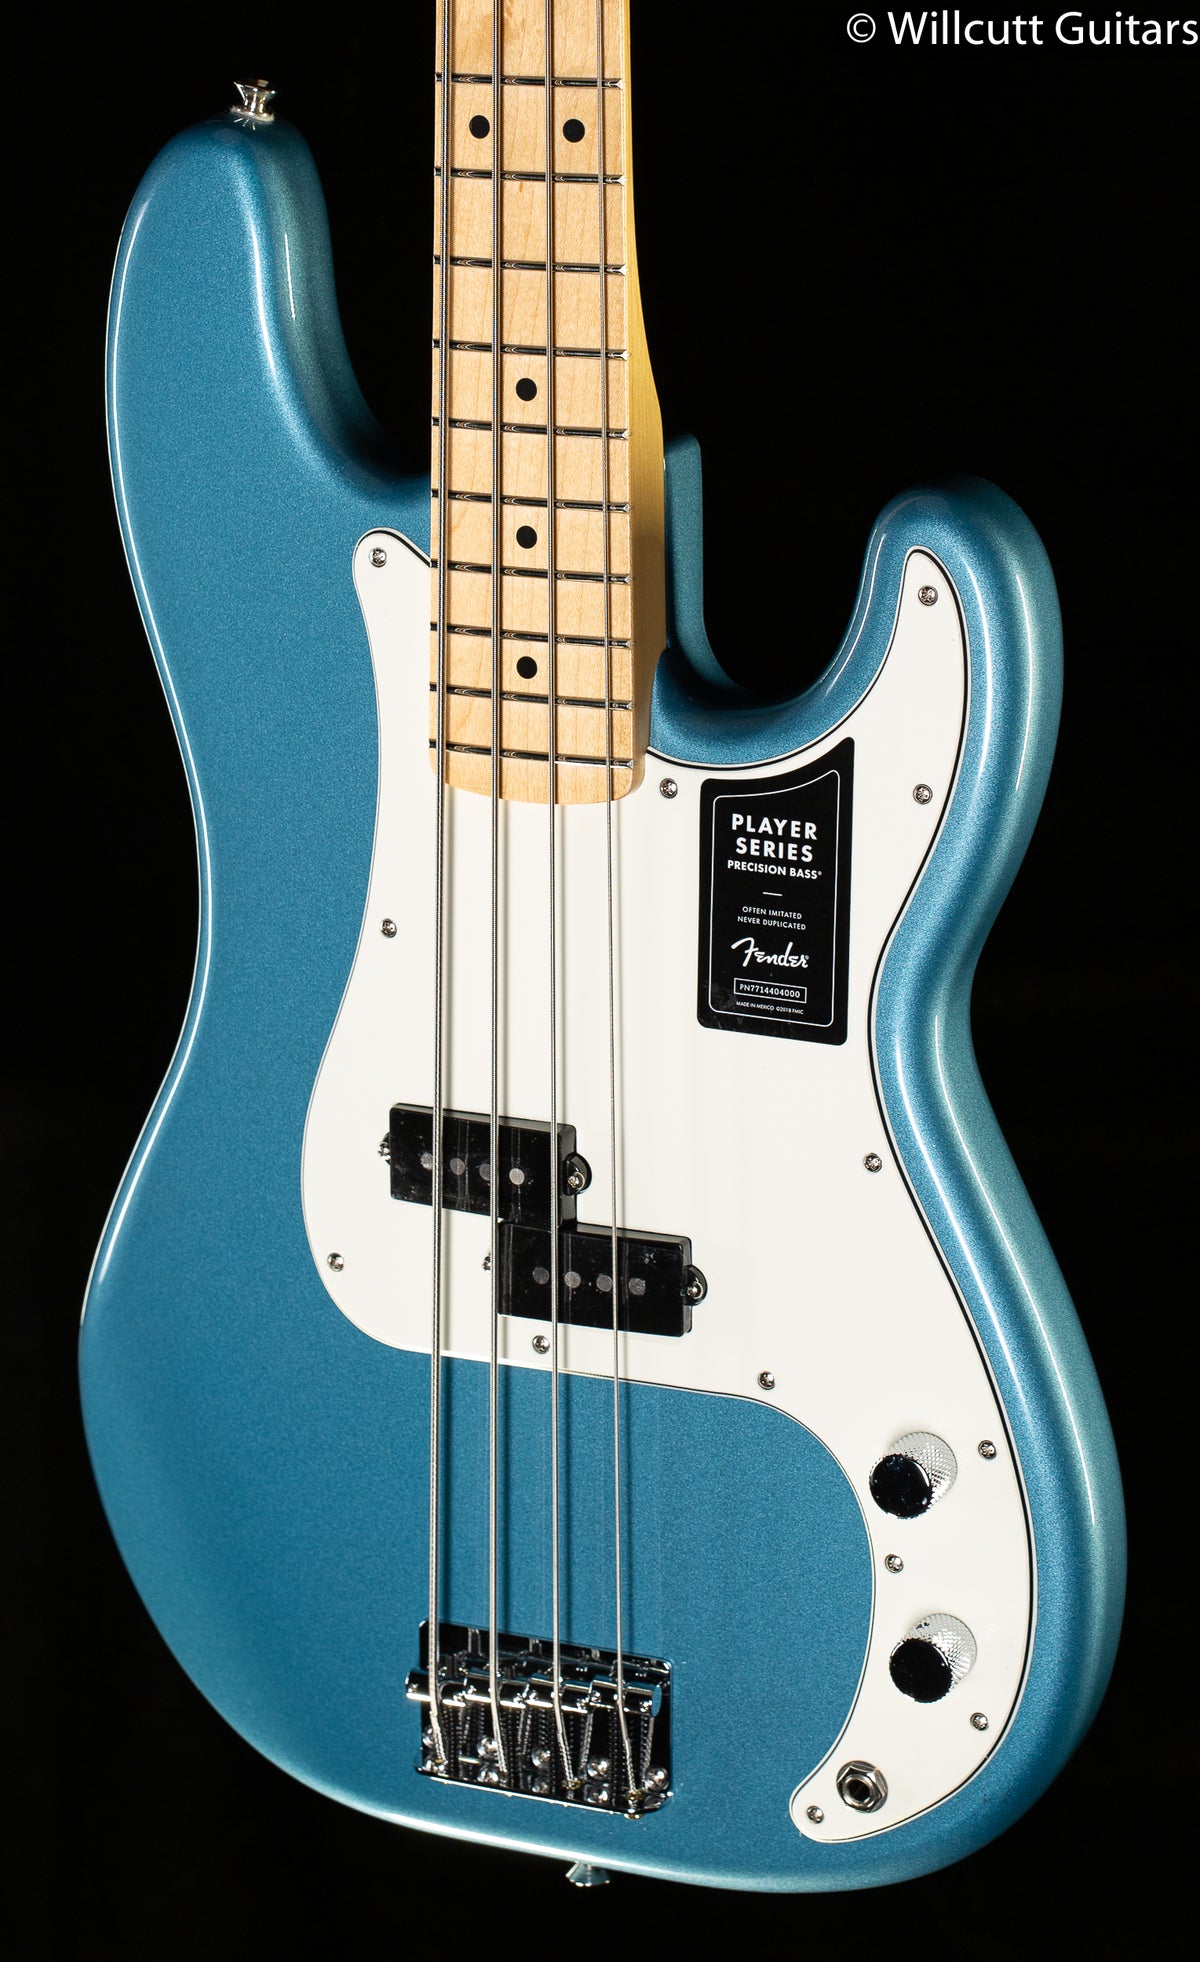 Fender Player Precision Bass Tidepool Maple Bass Guitar - Willcutt